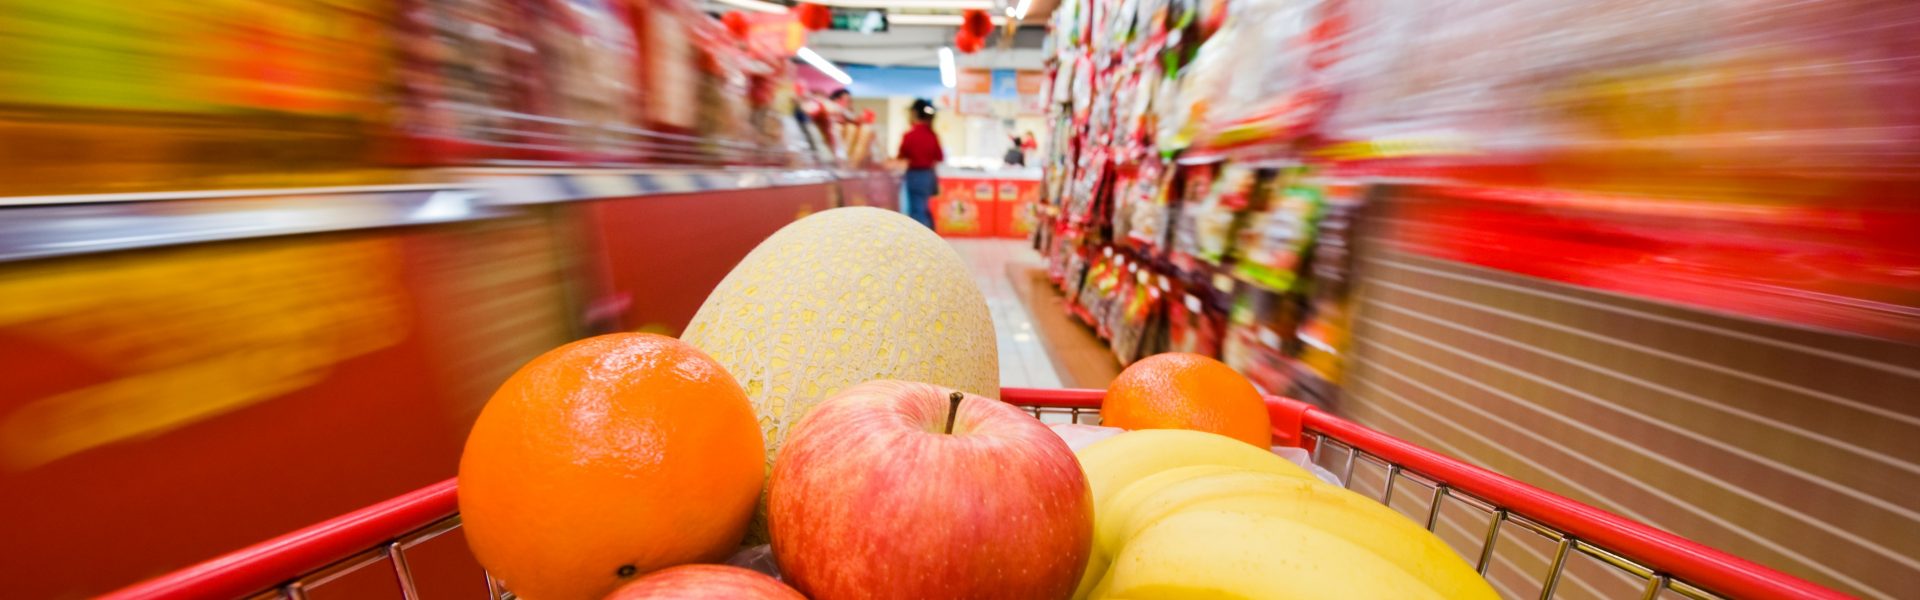 Nakupujte chytře: ovoce a zelenina, které vydrží!